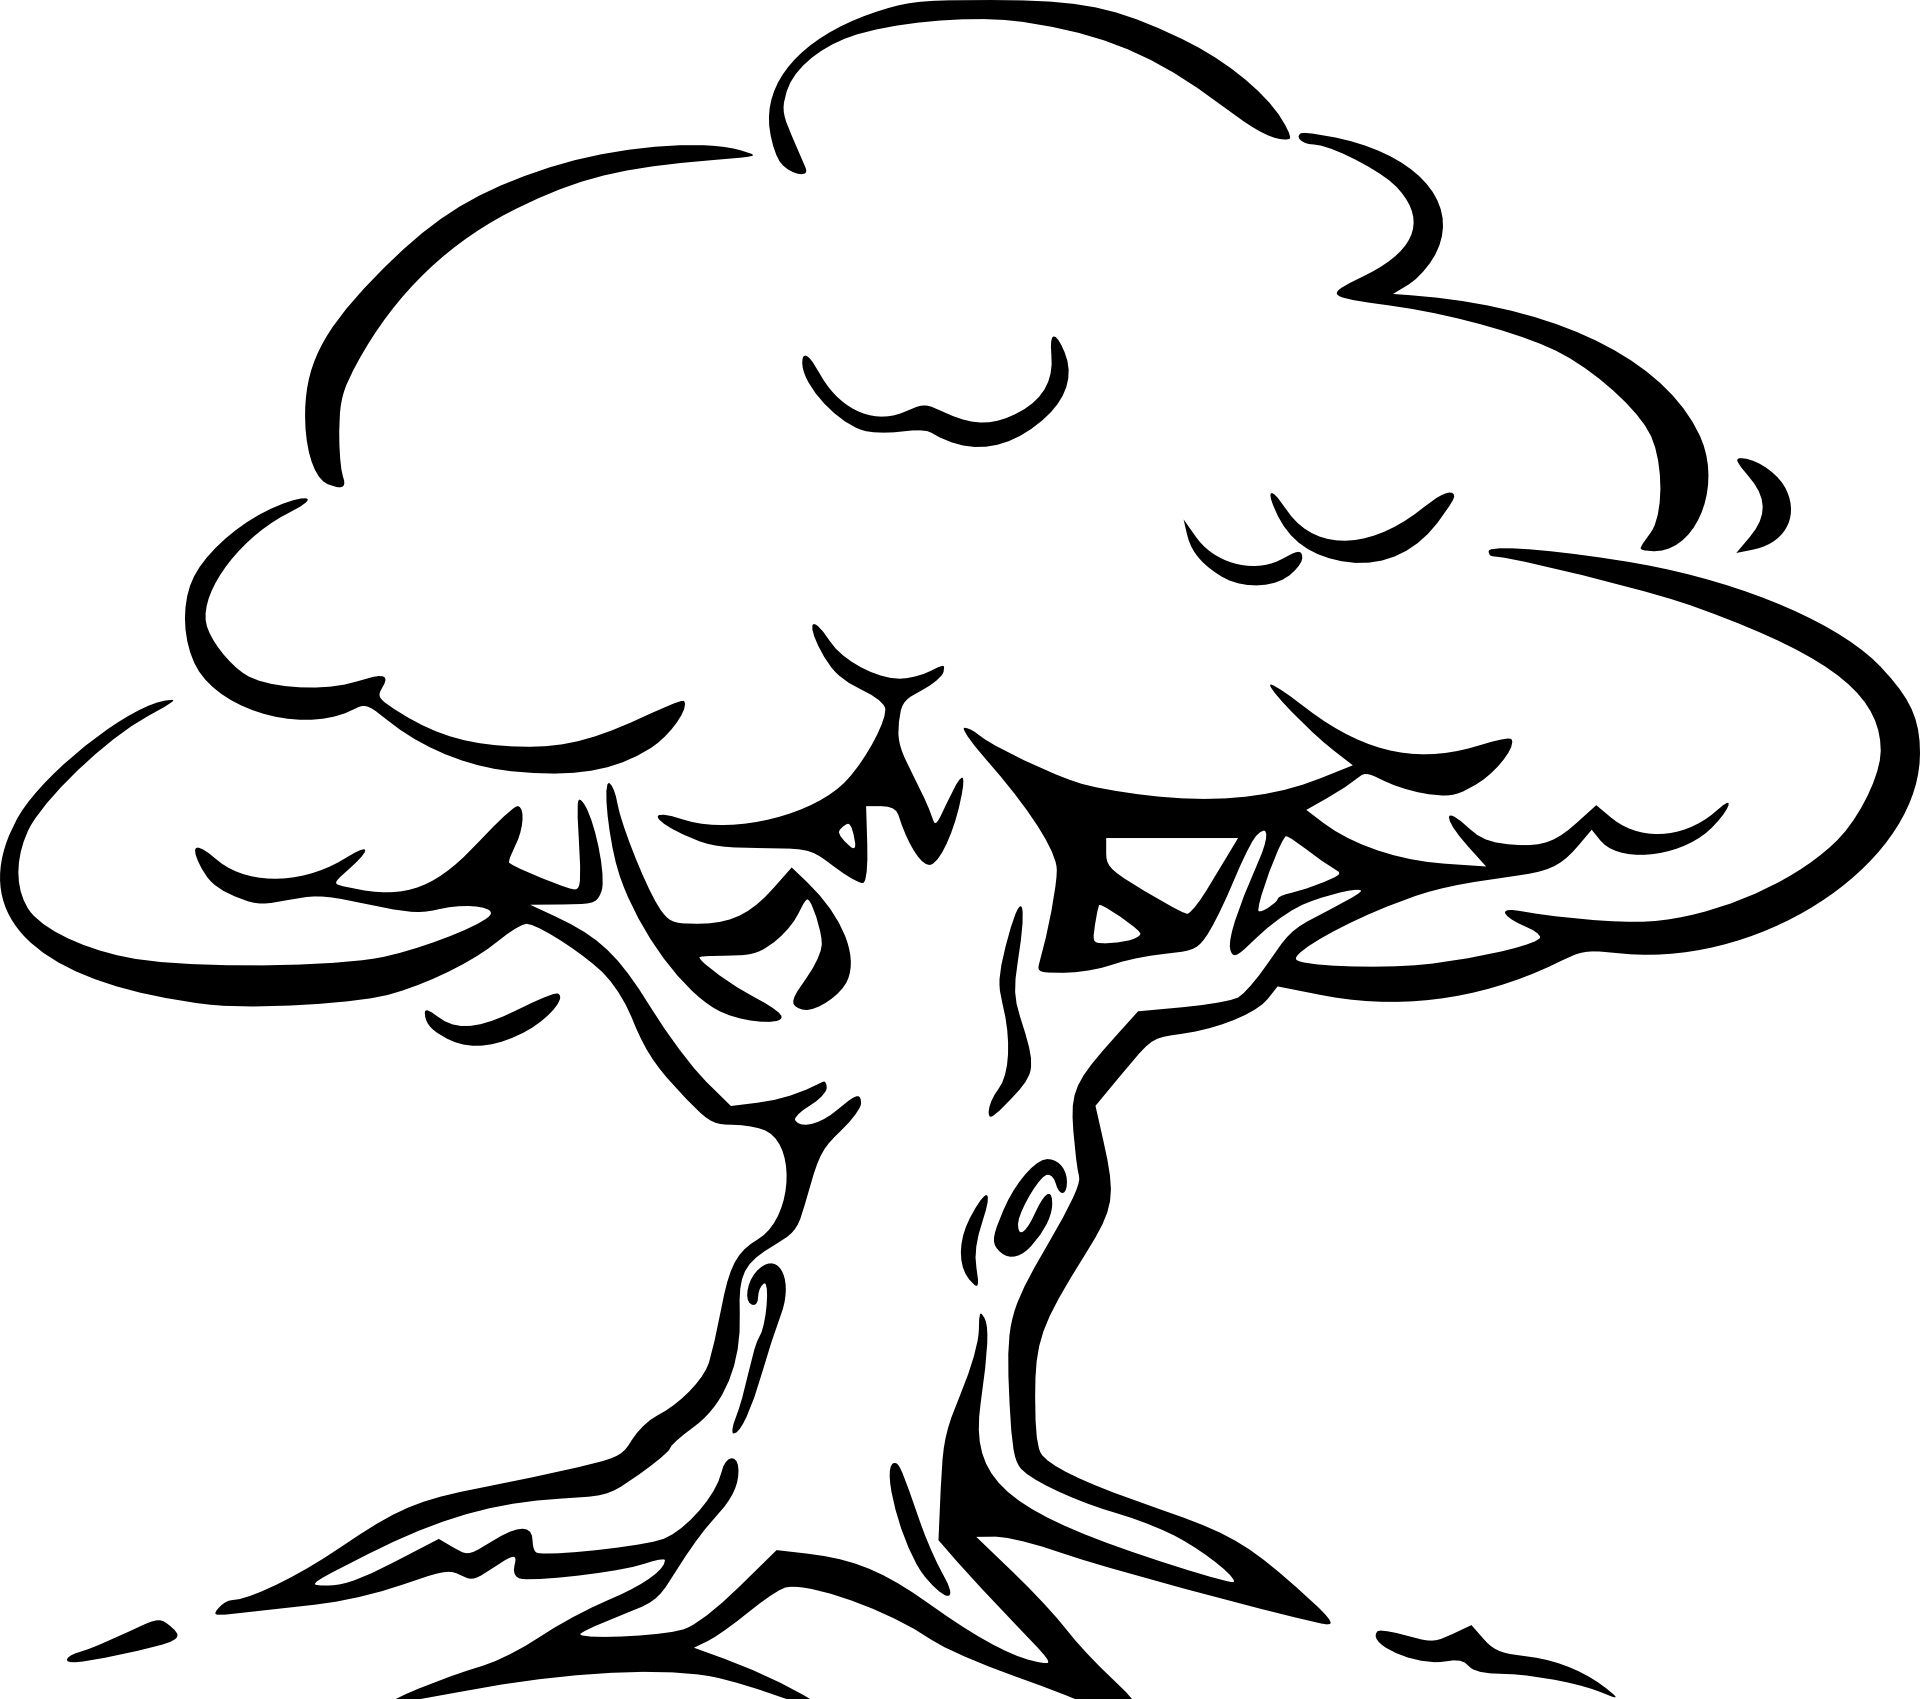 Malvorlage Baum Kostenlos | Ausmalbilder, Ausmalen, Baummalerei ganzes Malvorlage Baum